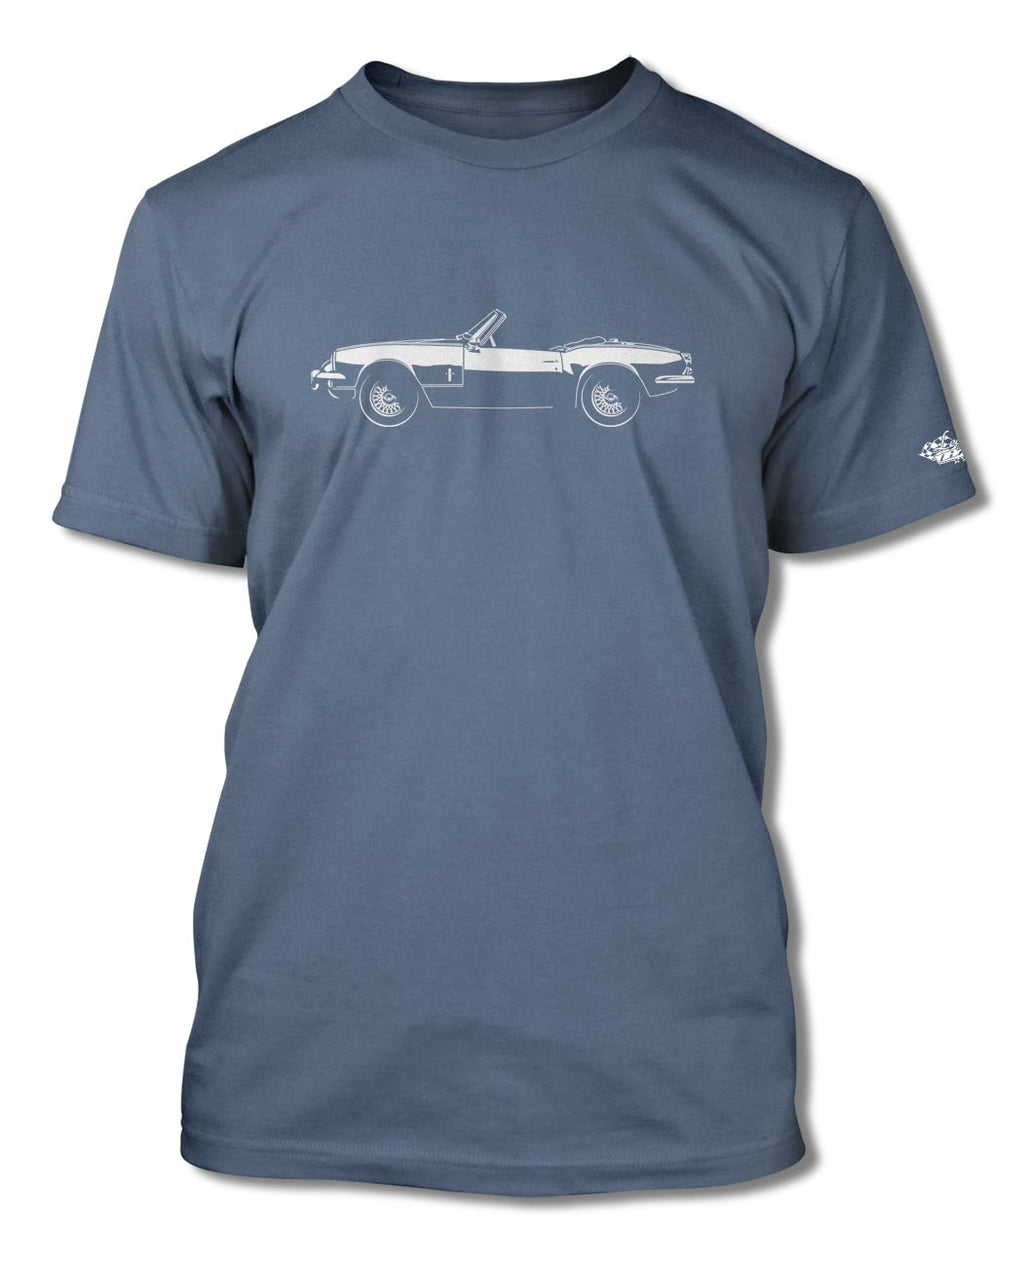 Triumph Spitfire MKIII Convertible T-Shirt - Men - Side View